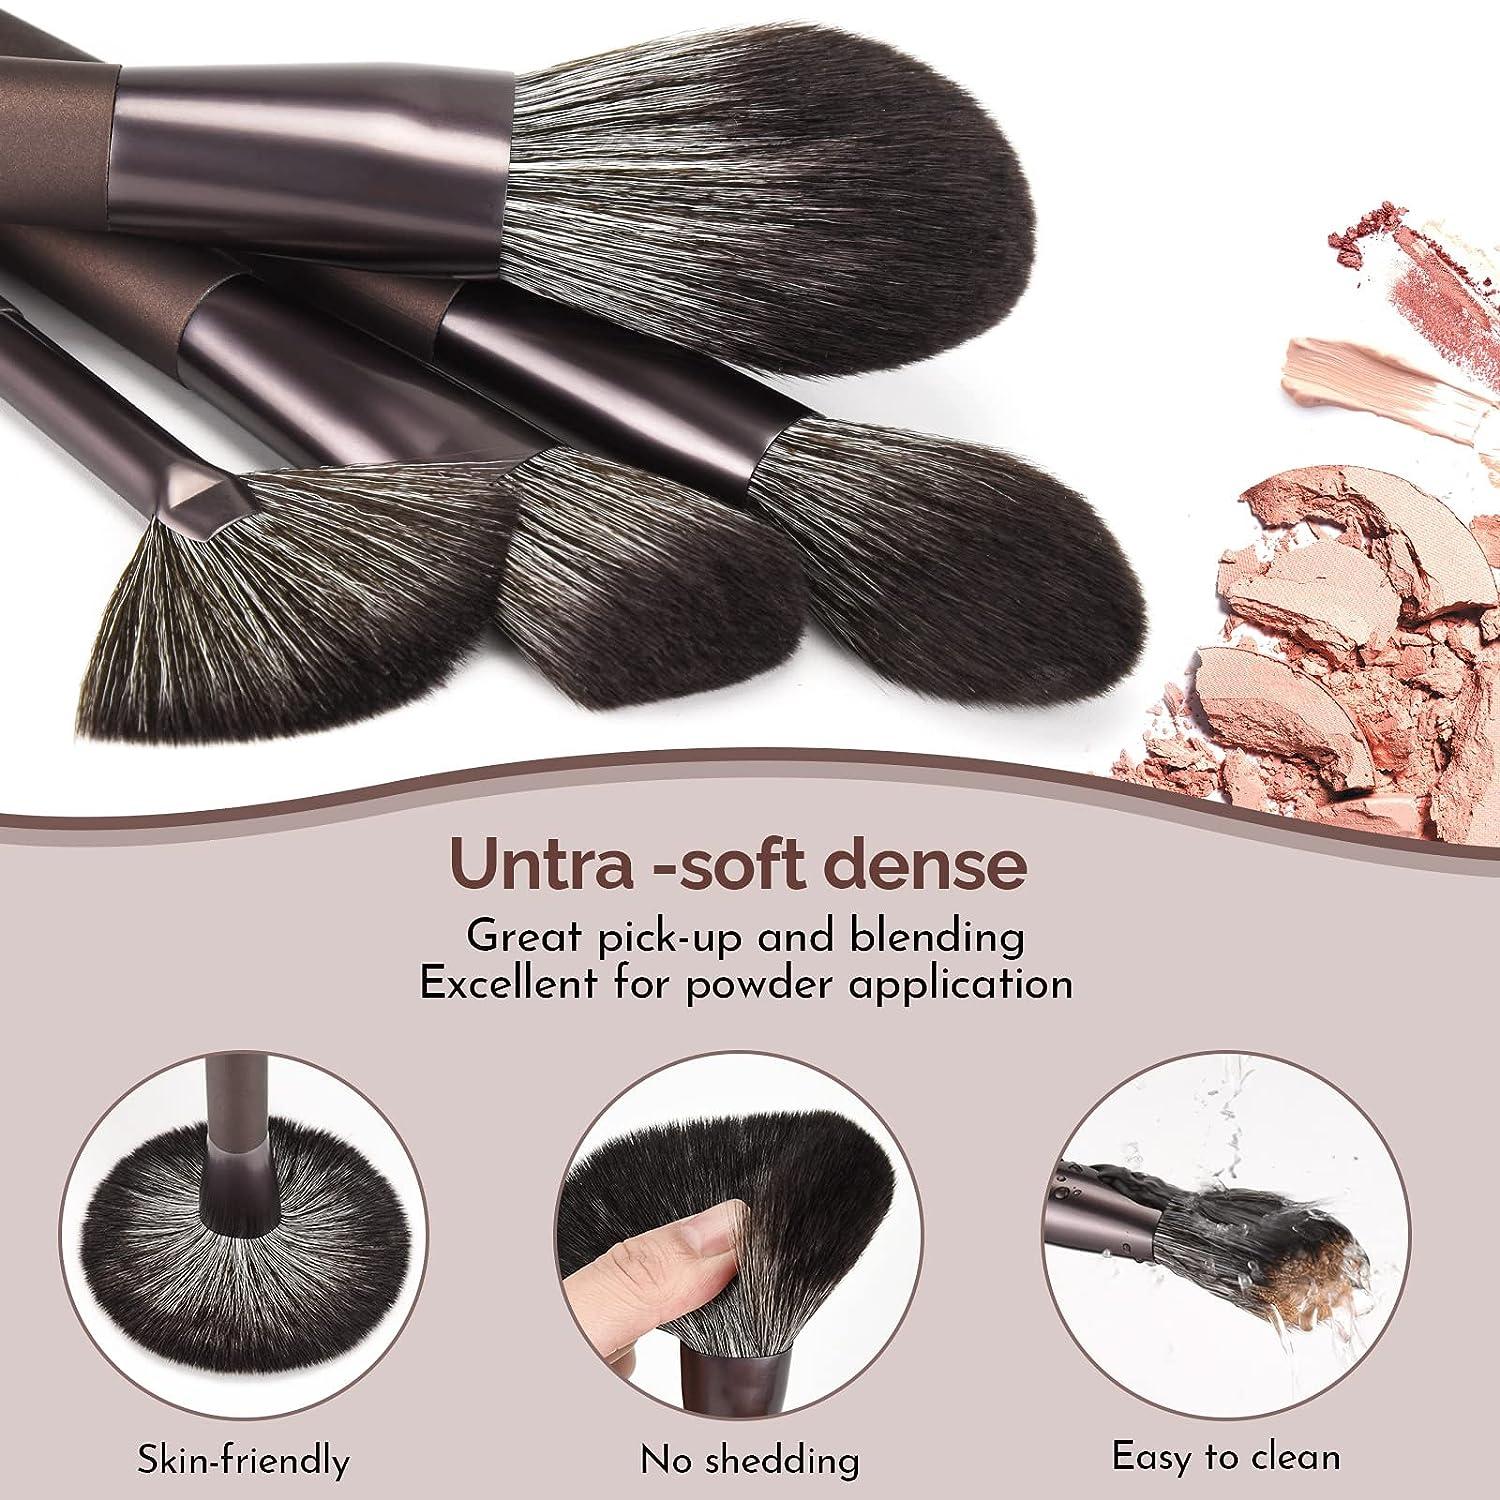 DUAIU Makeup Brushes Set - 12Pcs Makeup Brushes Premium Synthetic